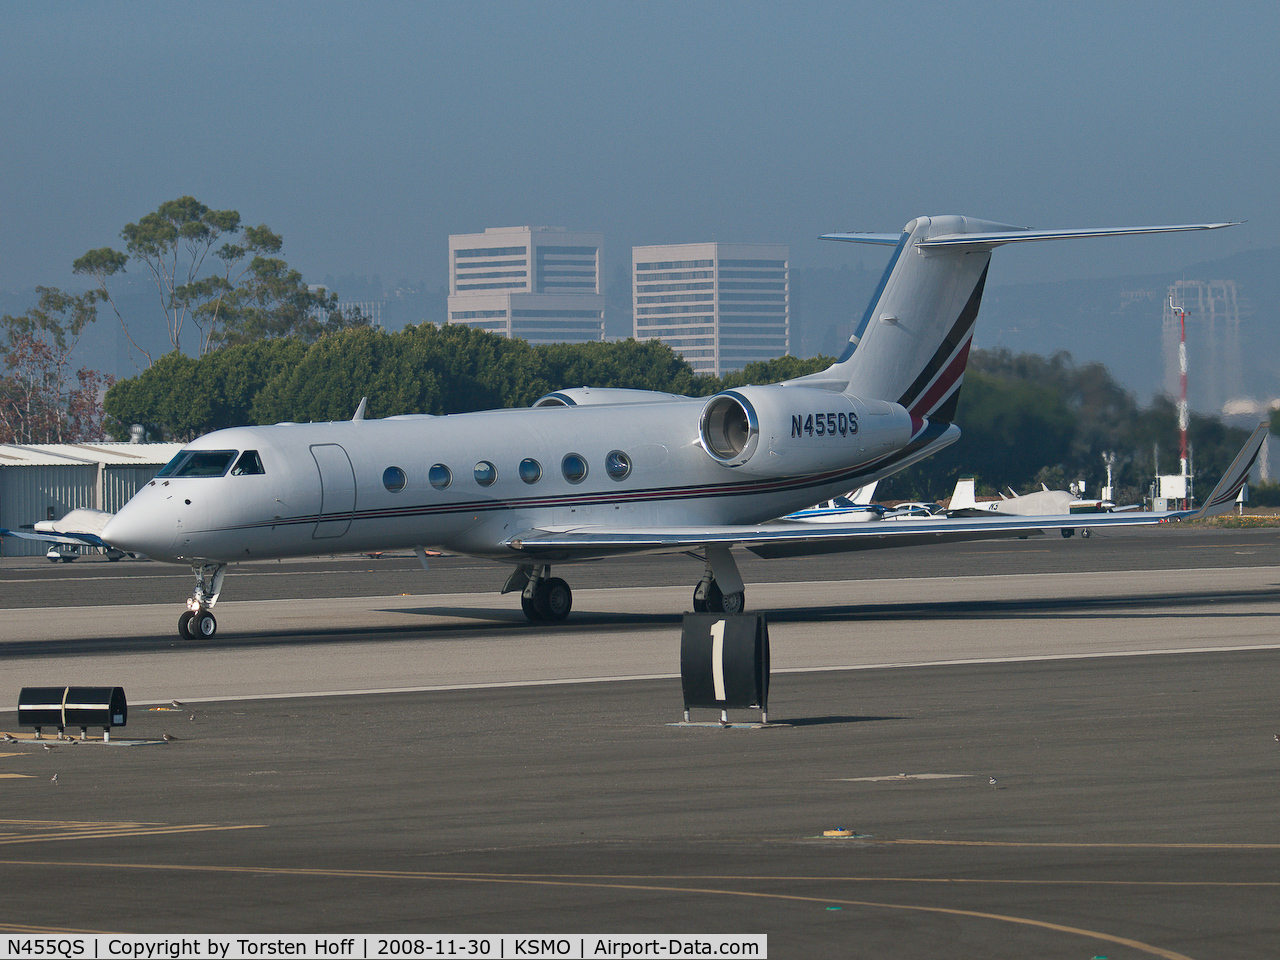 N455QS, 2007 Gulfstream Aerospace GIV-X (G450) C/N 4074, N455QS departing from RWY 21